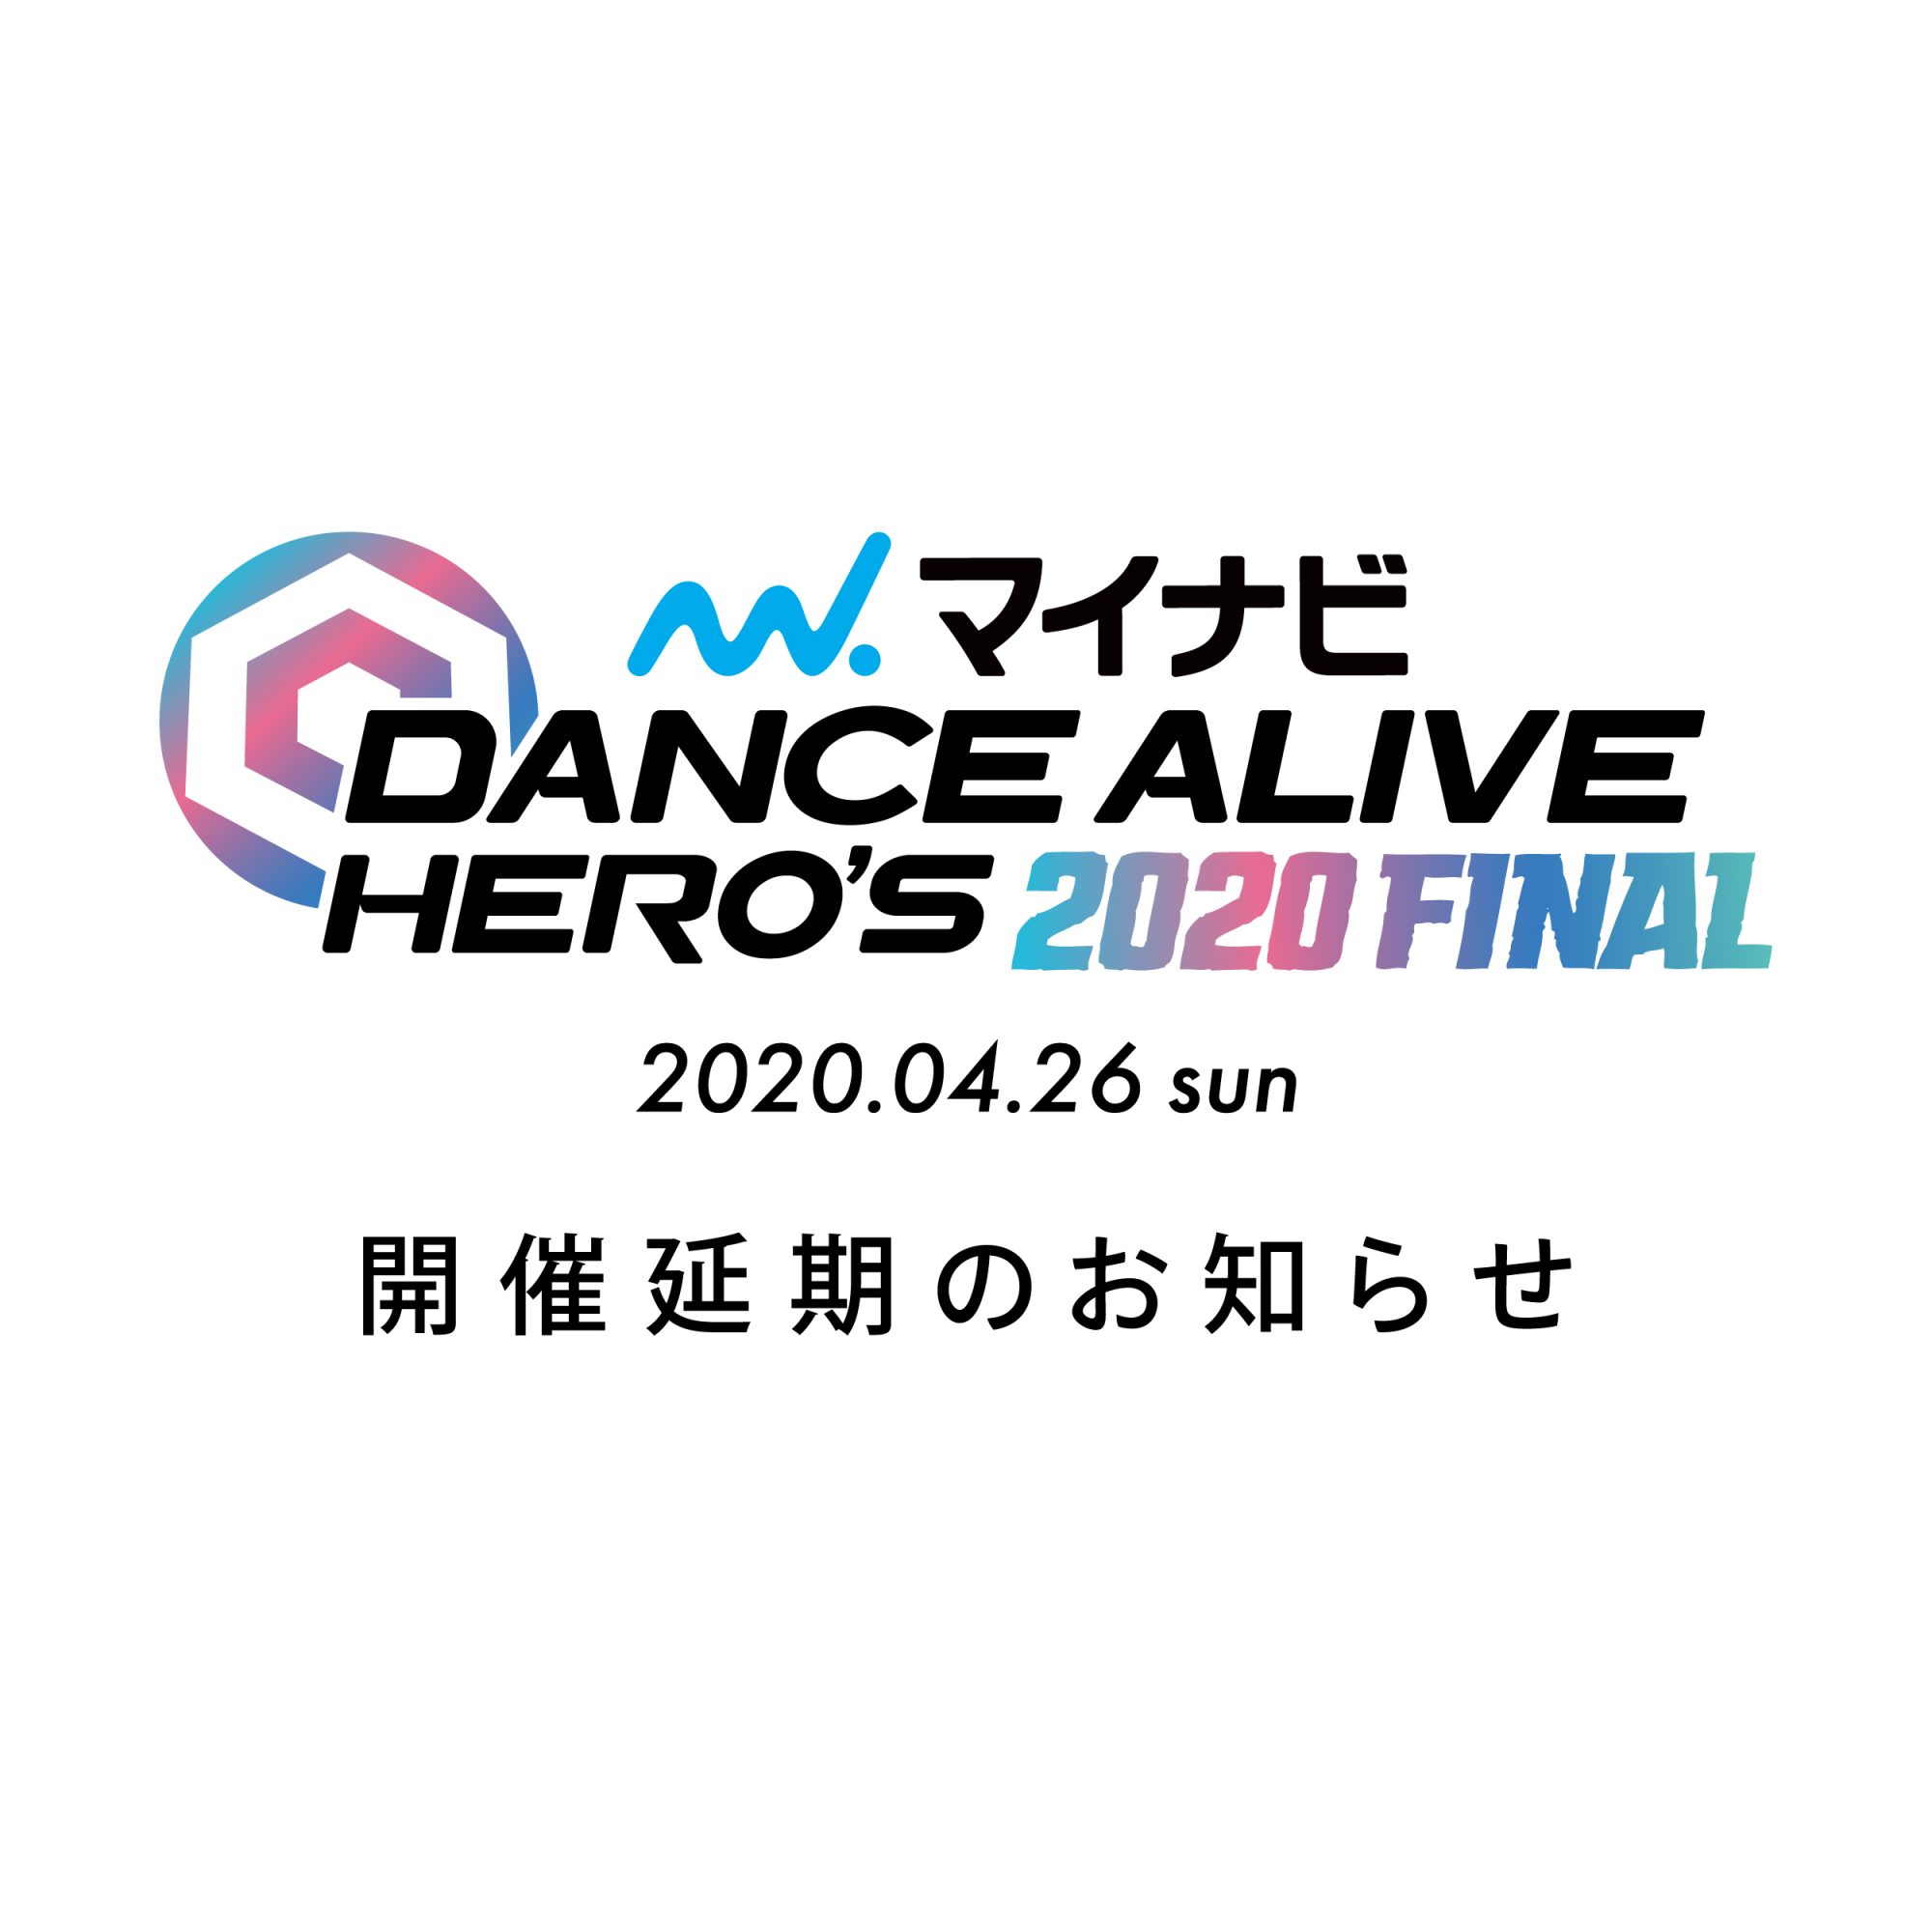 2020.04.26「マイナビDANCE ALIVE HERO’S 2020 FINAL」開催延期のお知らせ